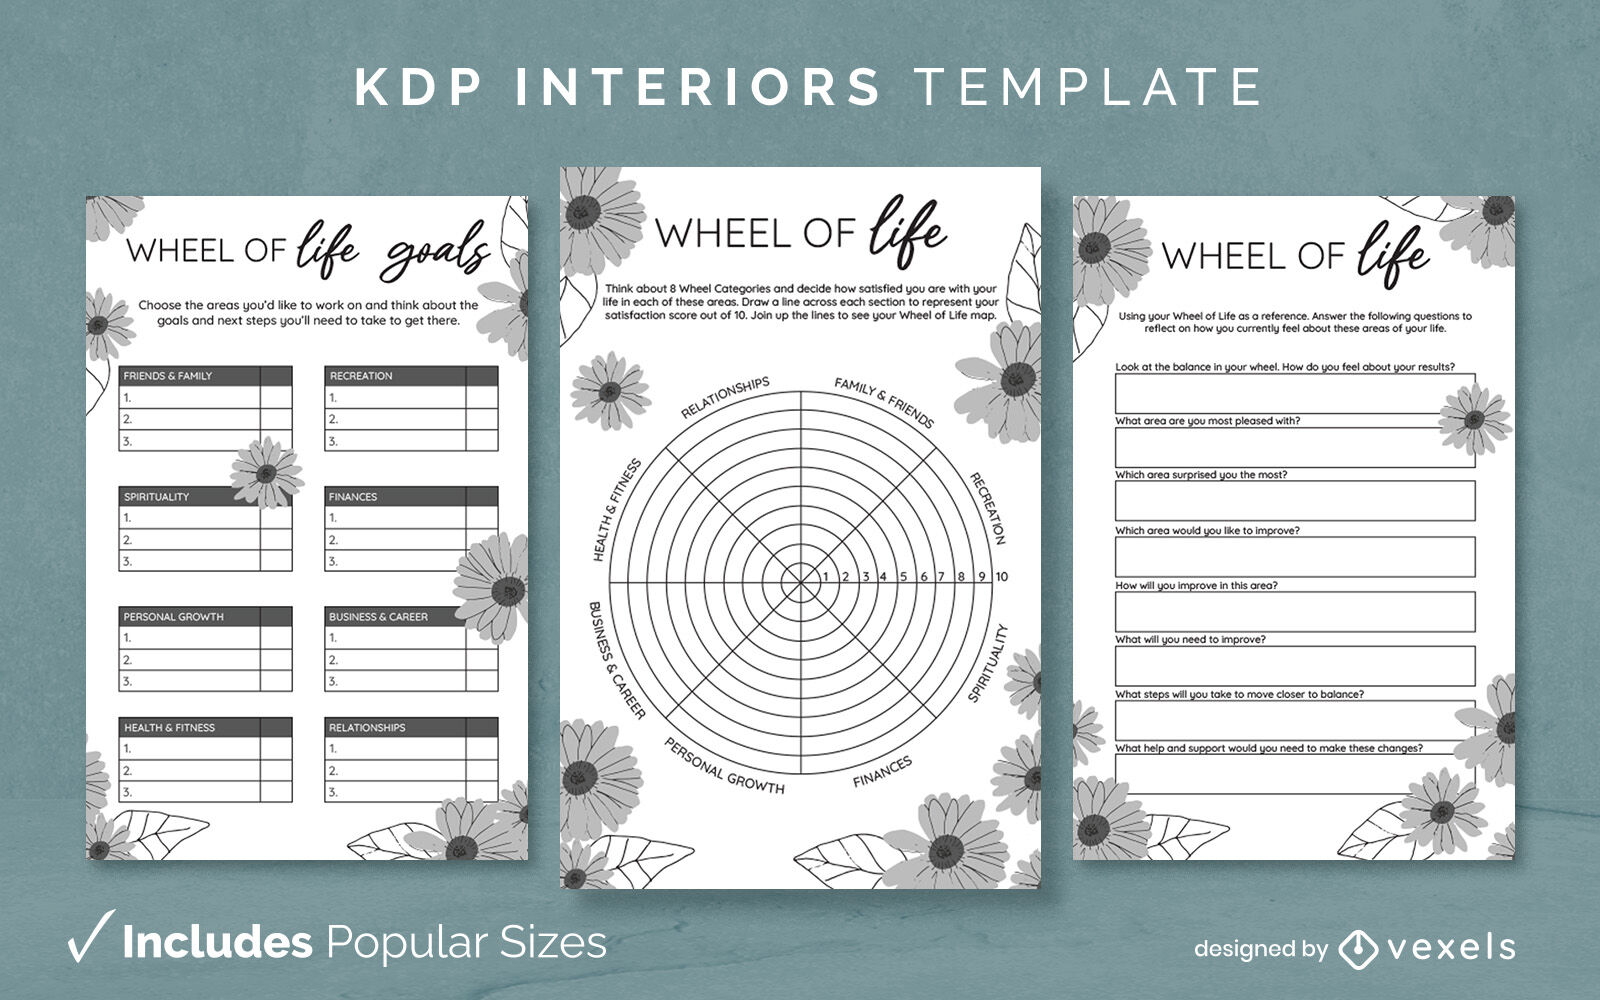 Diseño de plantilla interior KDP de la rueda de la vida.